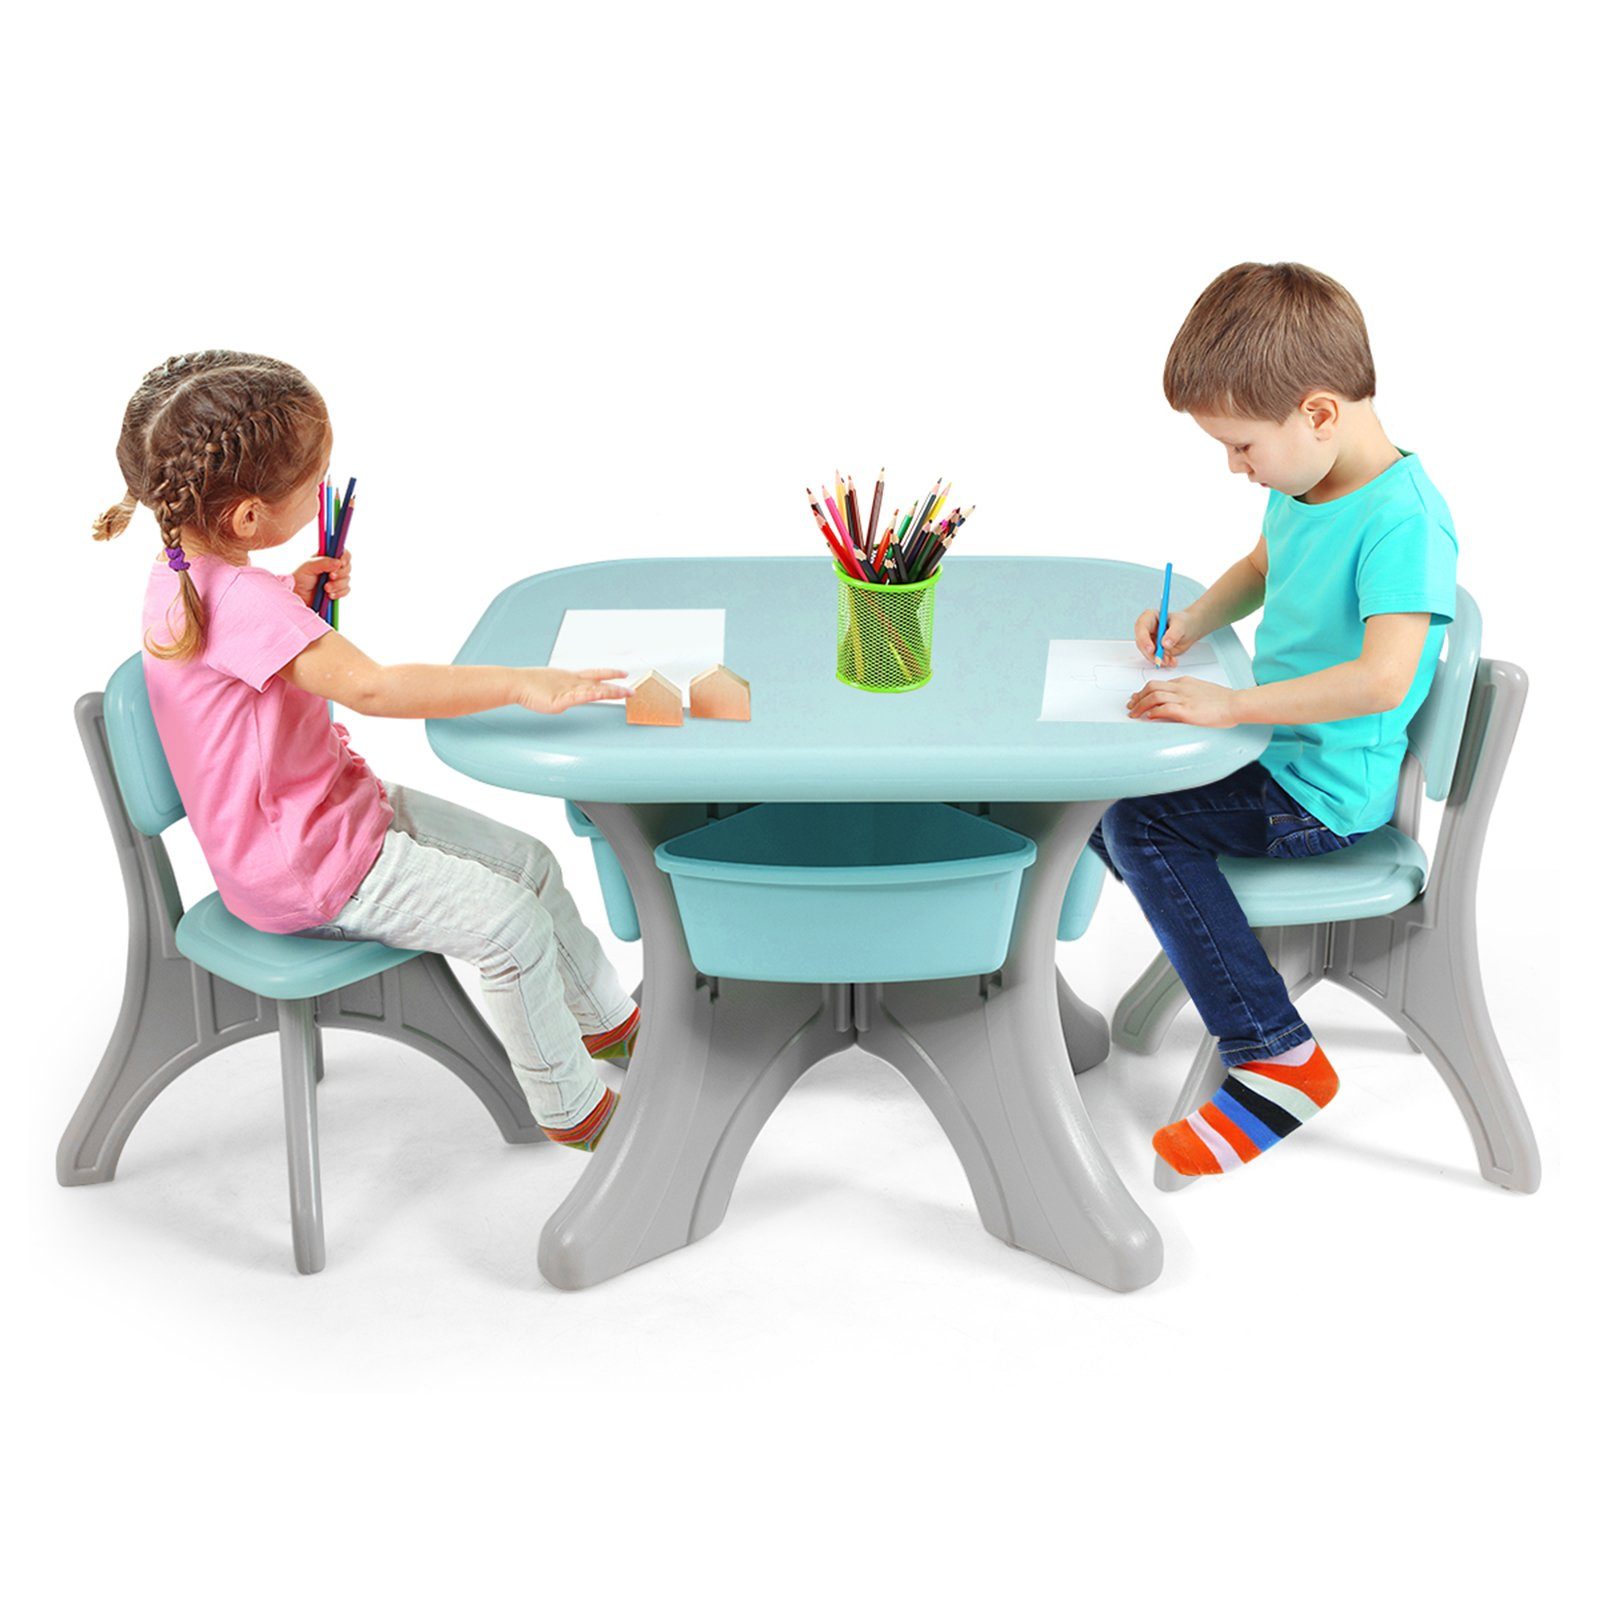 2 mit Grün COSTWAY Stühlen&Kindertisch, Kunststoff Stauraum, mit Kindersitzgruppe,